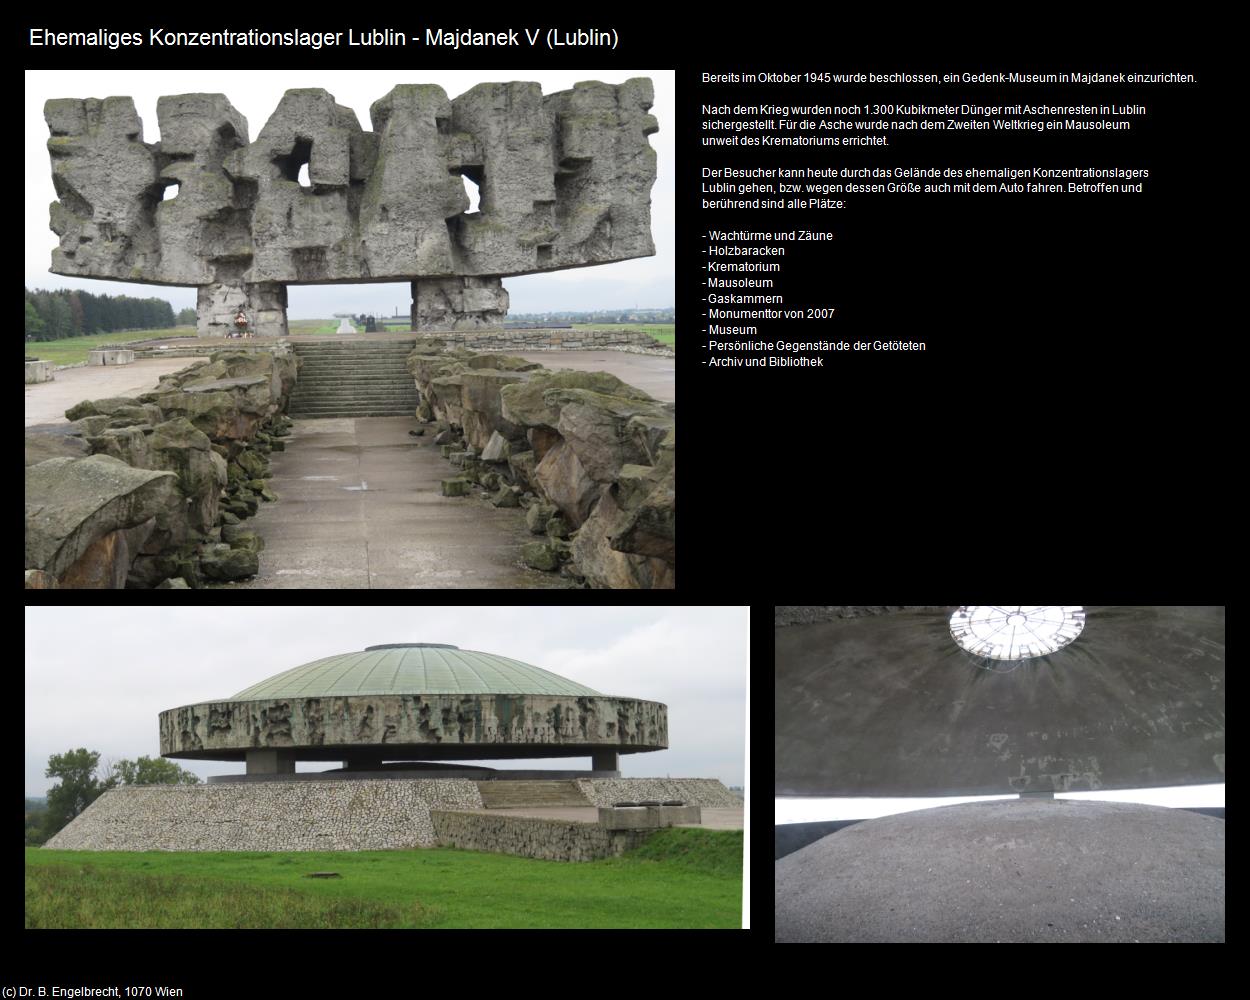 Ehem. Konzentrationslager Lublin - Majdanek V (Lublin) in POLEN-Galizien